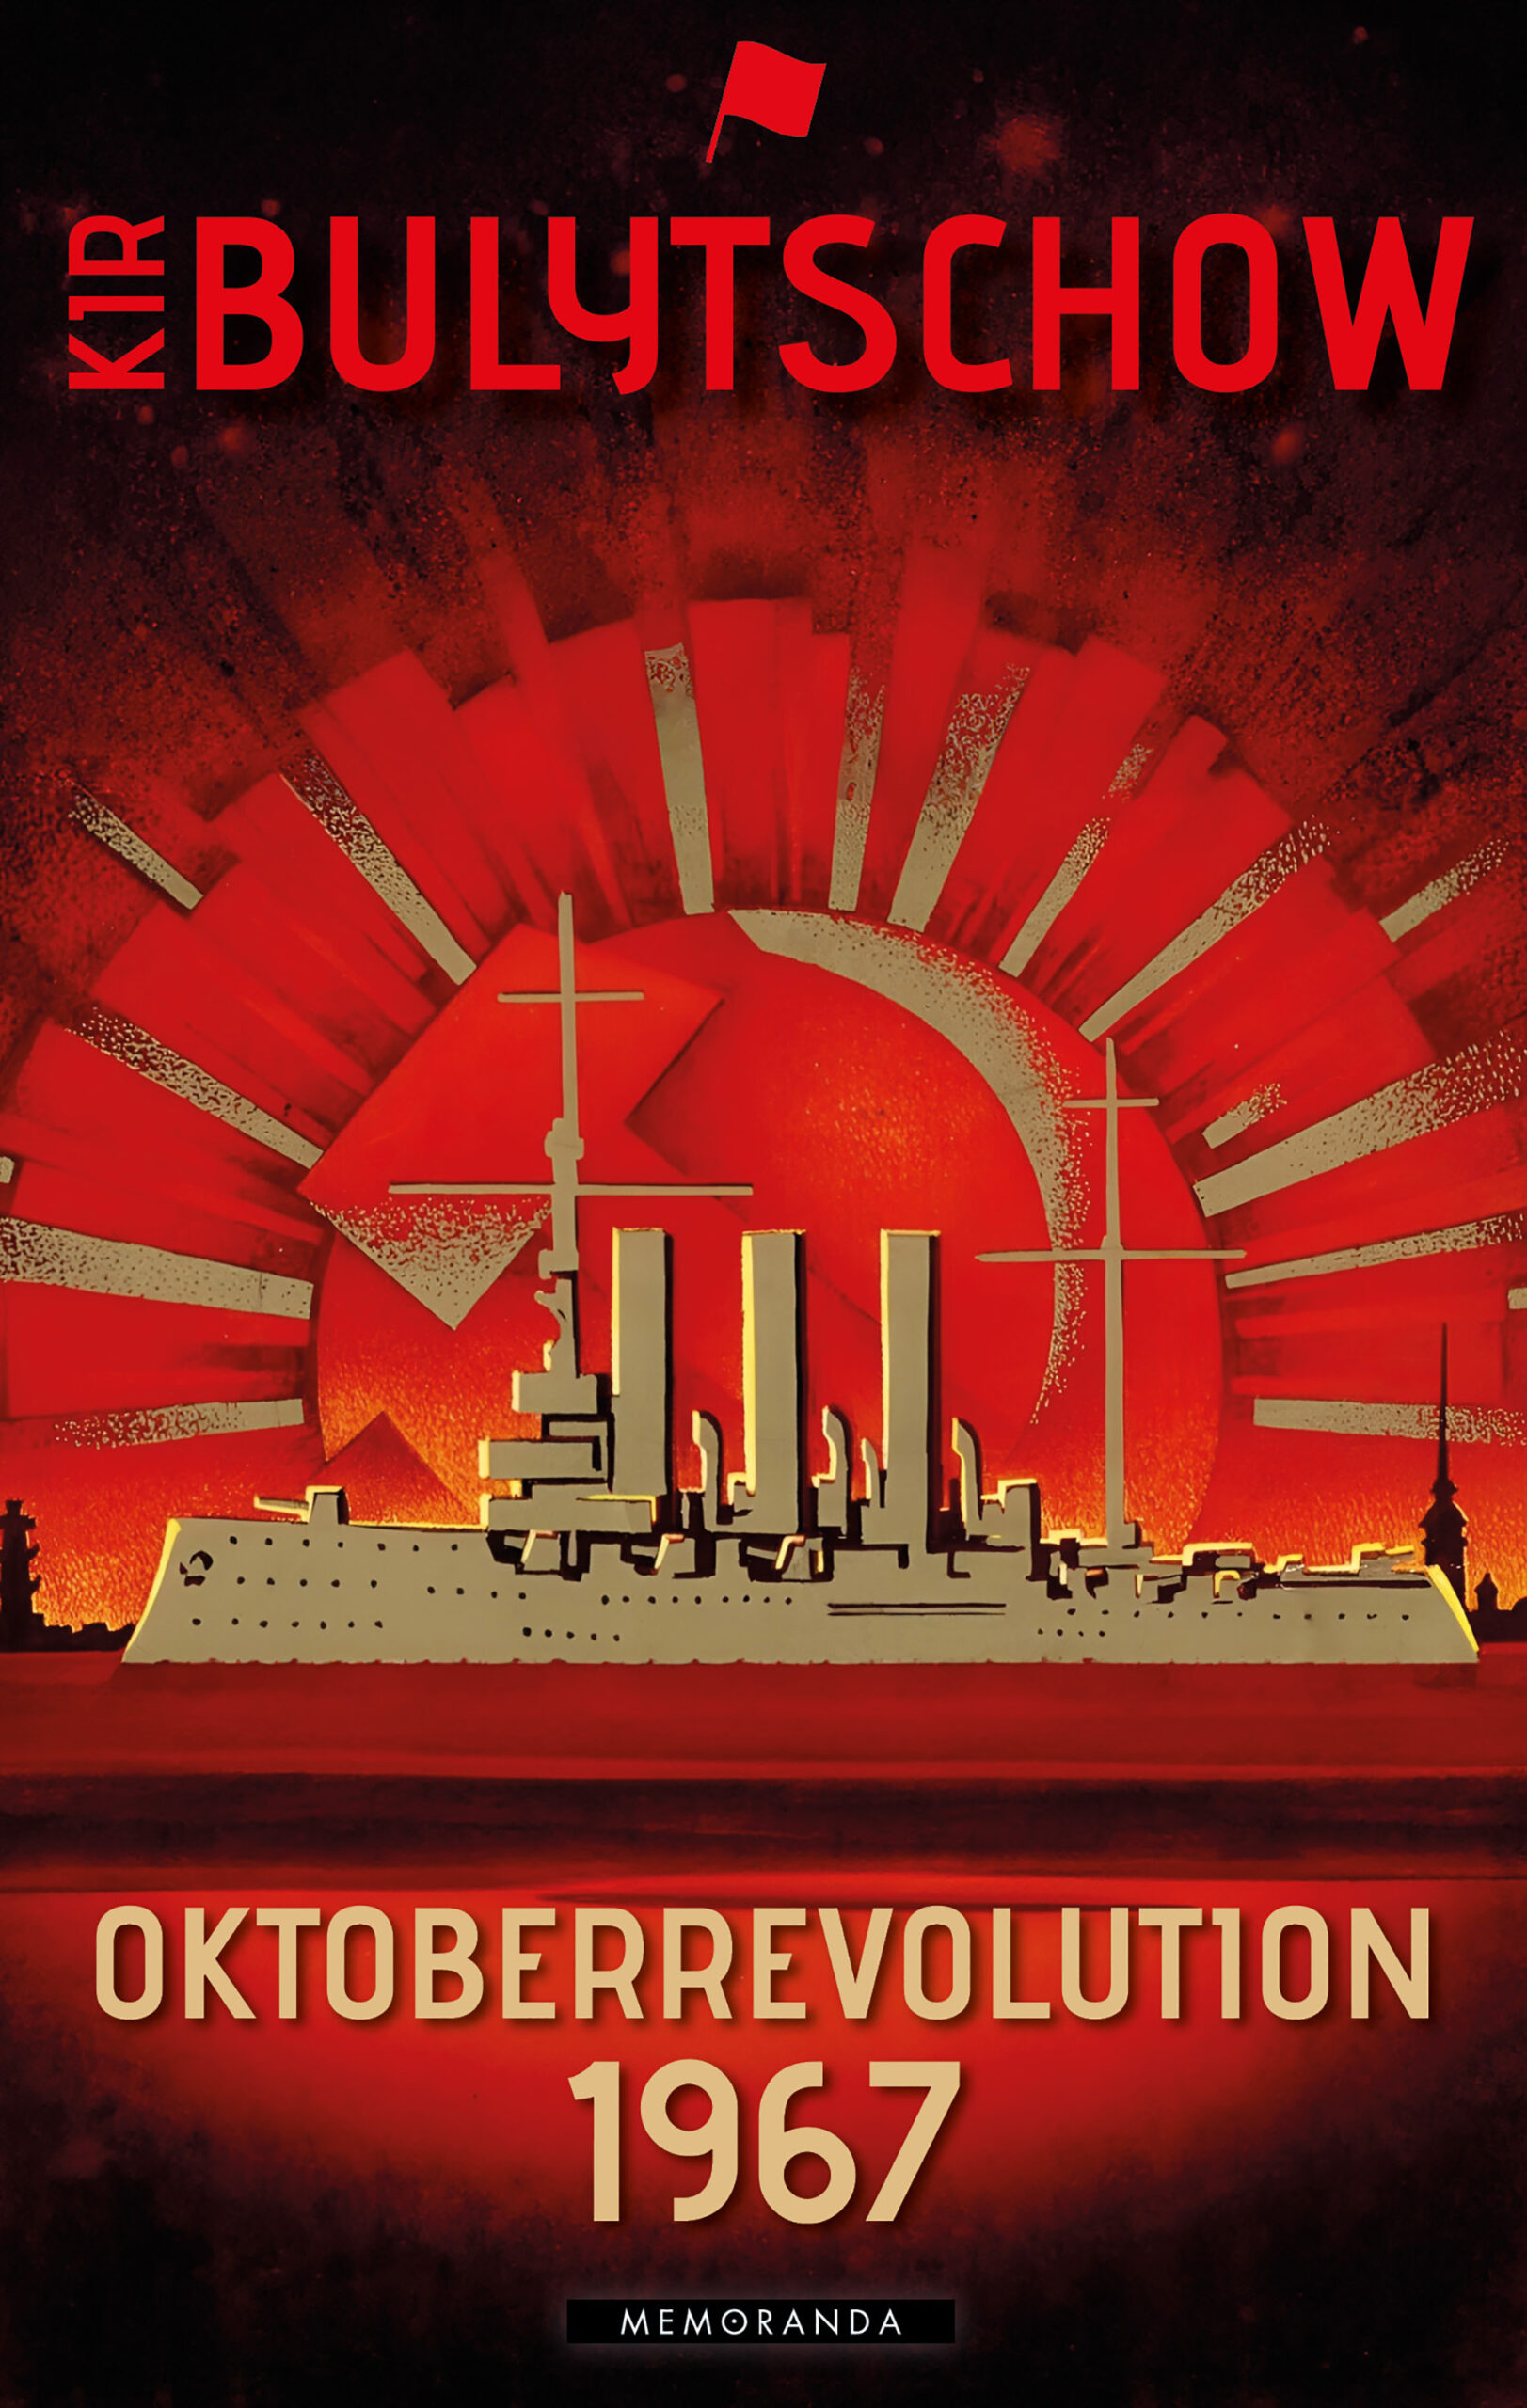 Titelbild des Buches Oktoberrevolution 1967 von Kir Bulytschow: Goldener Panzerkreuzer Aurora vor rotem Strahlenkranz.